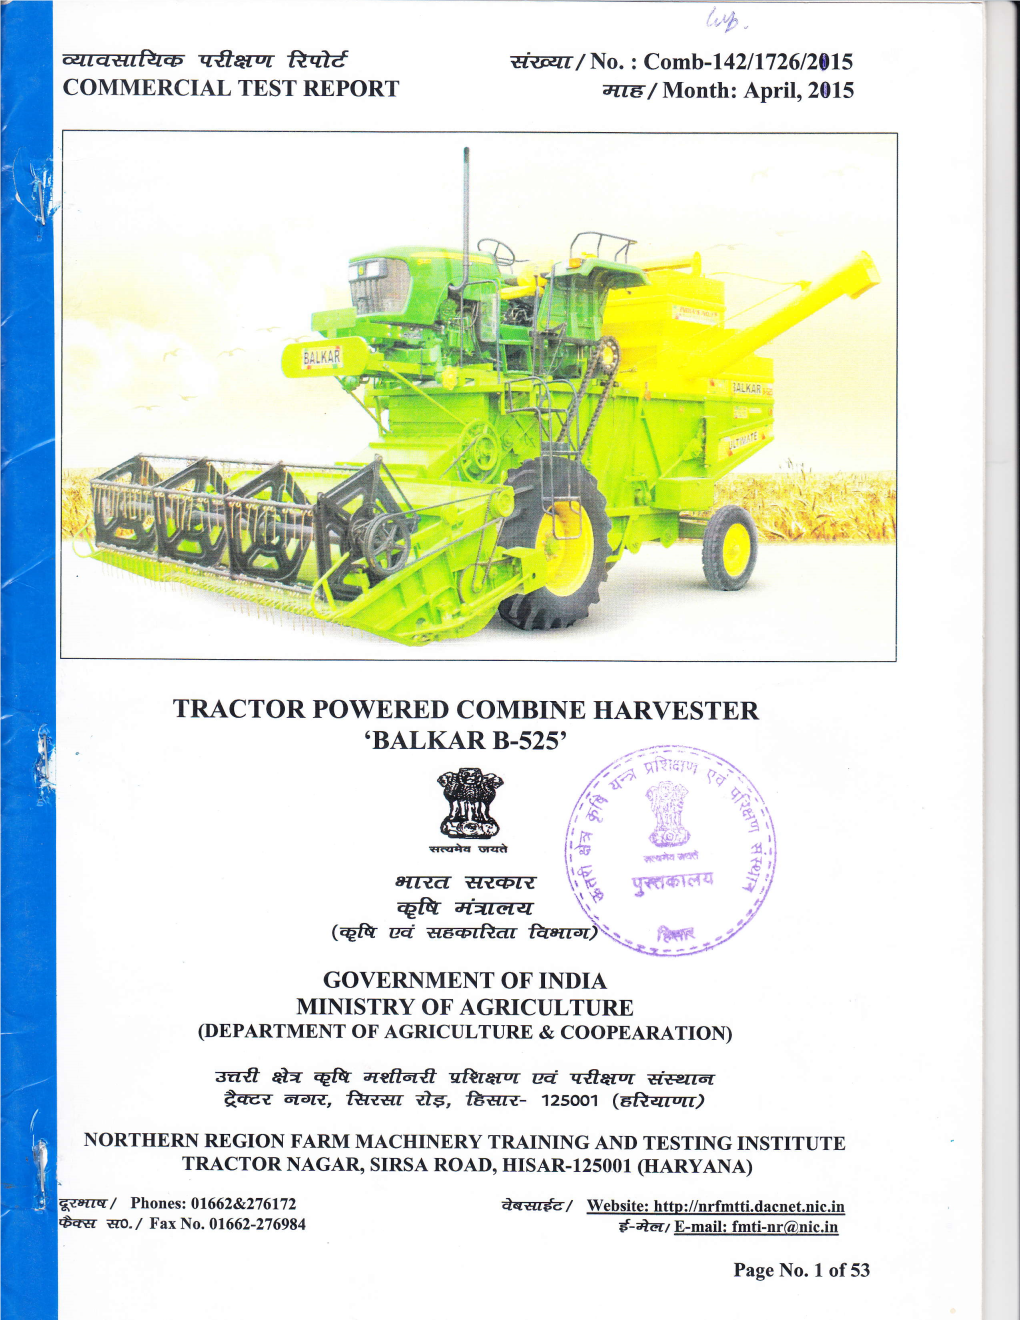 2. Tractor Powered Combine Harvester Balkar B-525